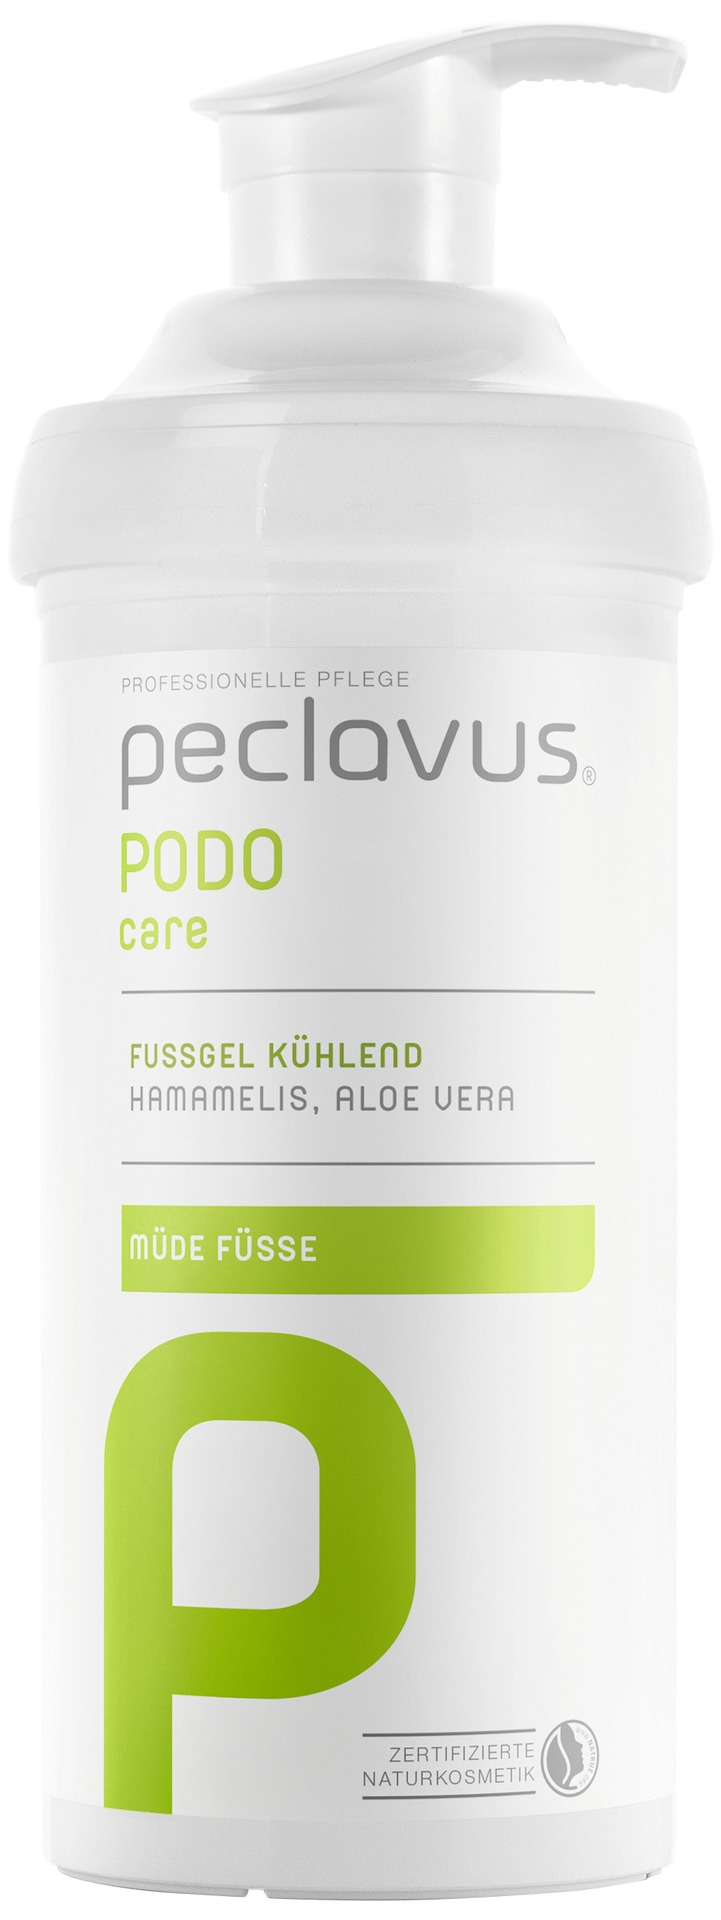 Peclavus PODOcare Fußgel kühlend | 500 ml